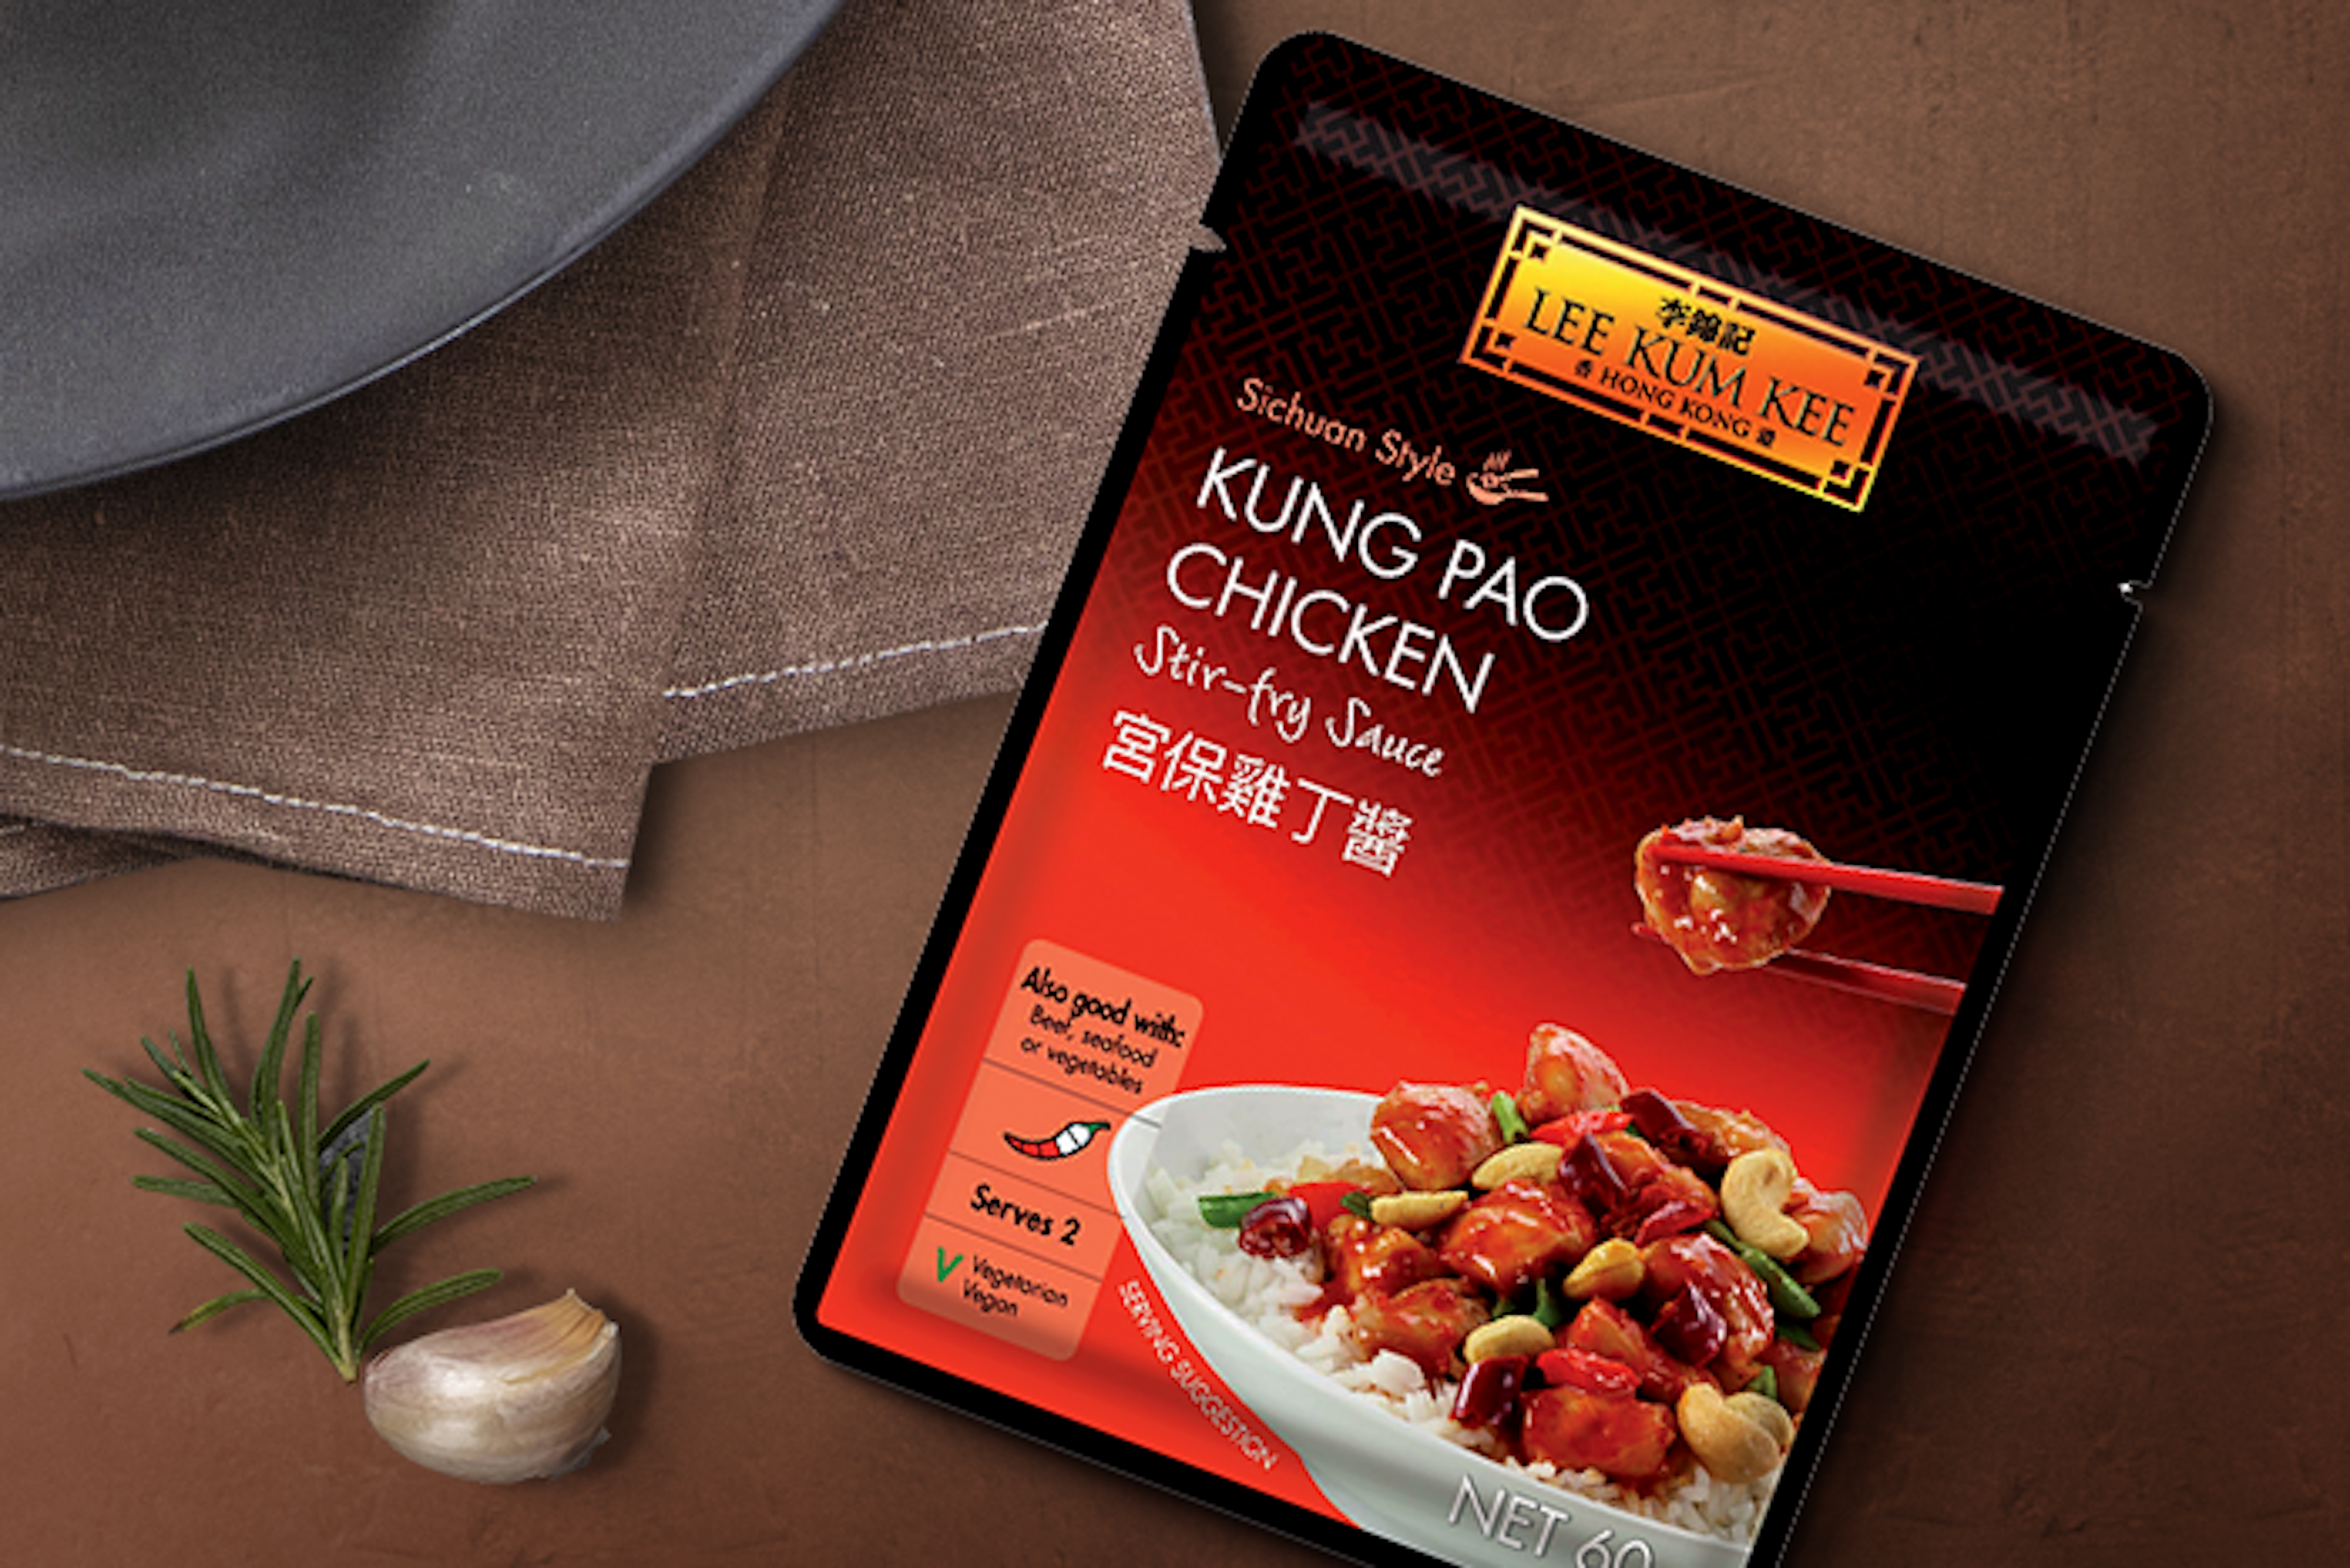 LEE KUM KEE Sauce neben Zutaten für Kung Pao Chicken wie Hühnchen, Paprika und Frühlingszwiebeln